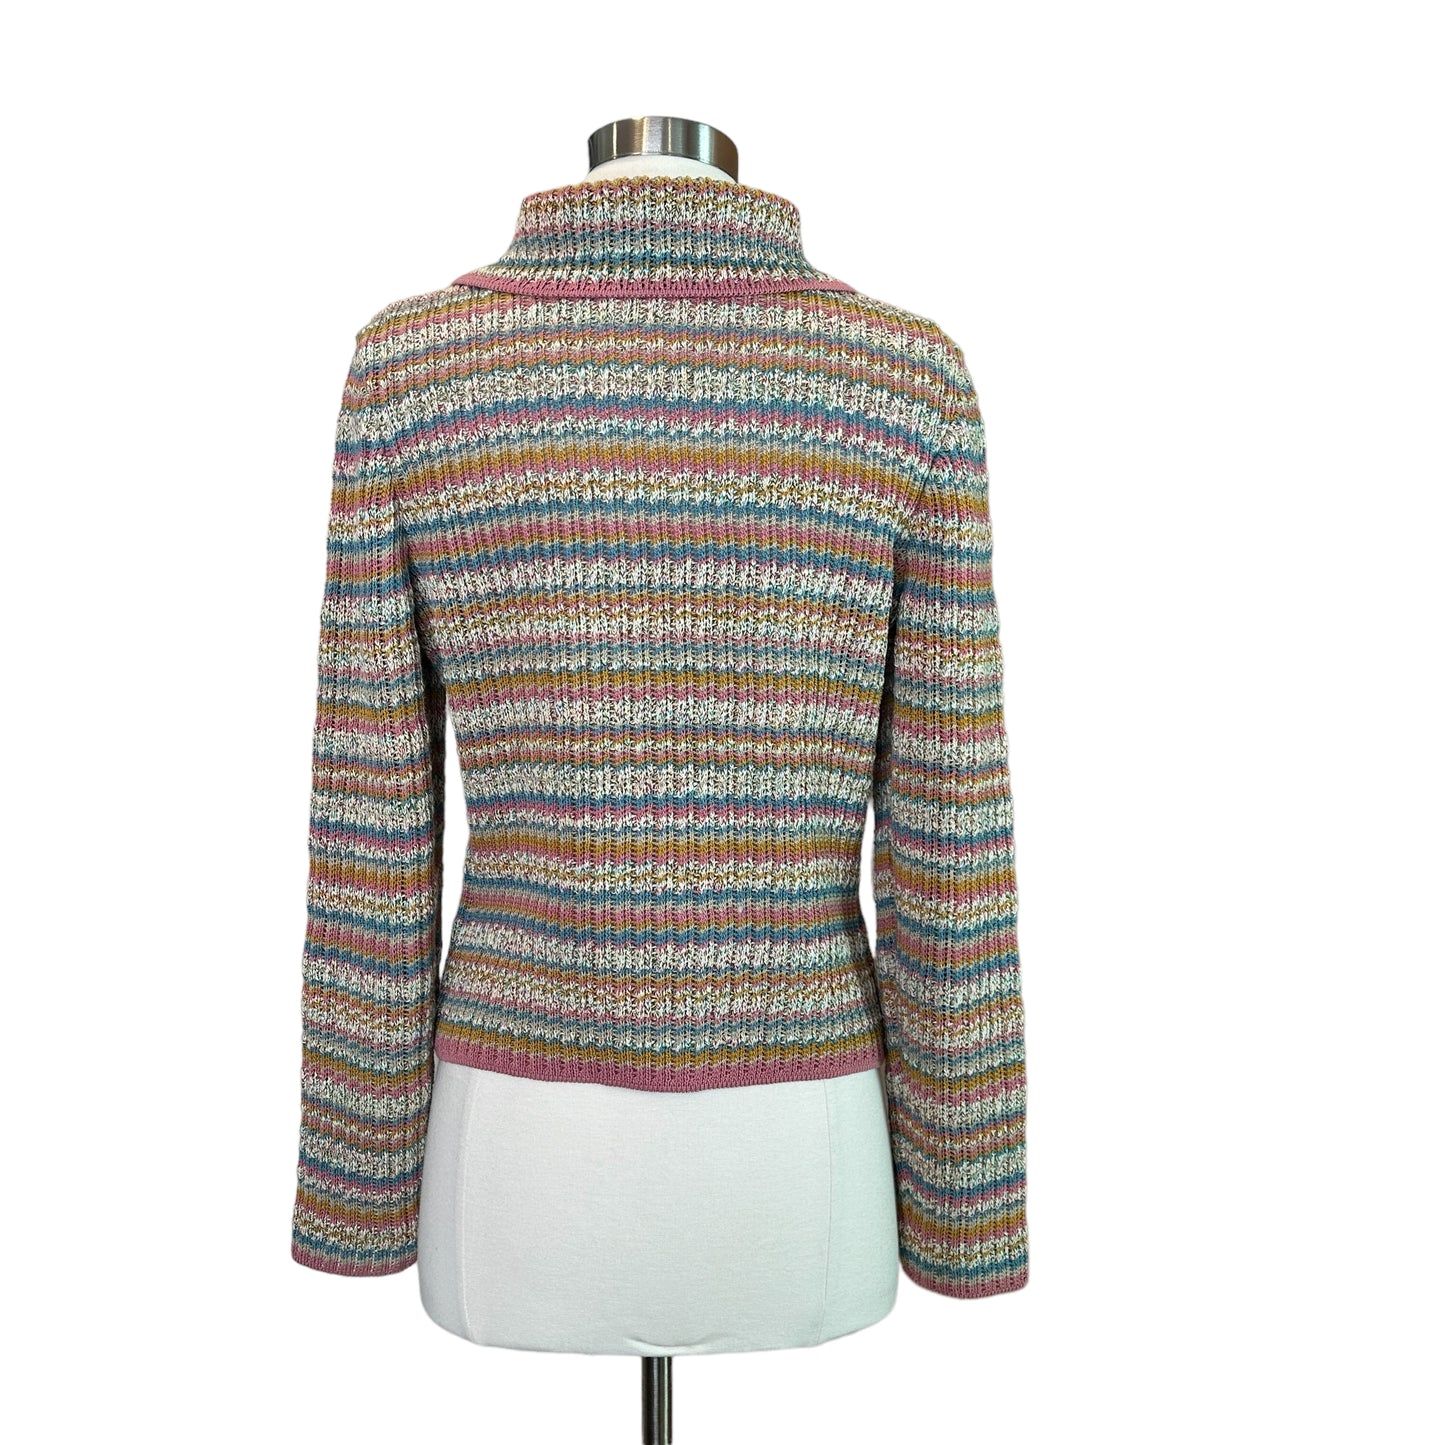 Paris-Cuba Multicolor Knits Sweater - S